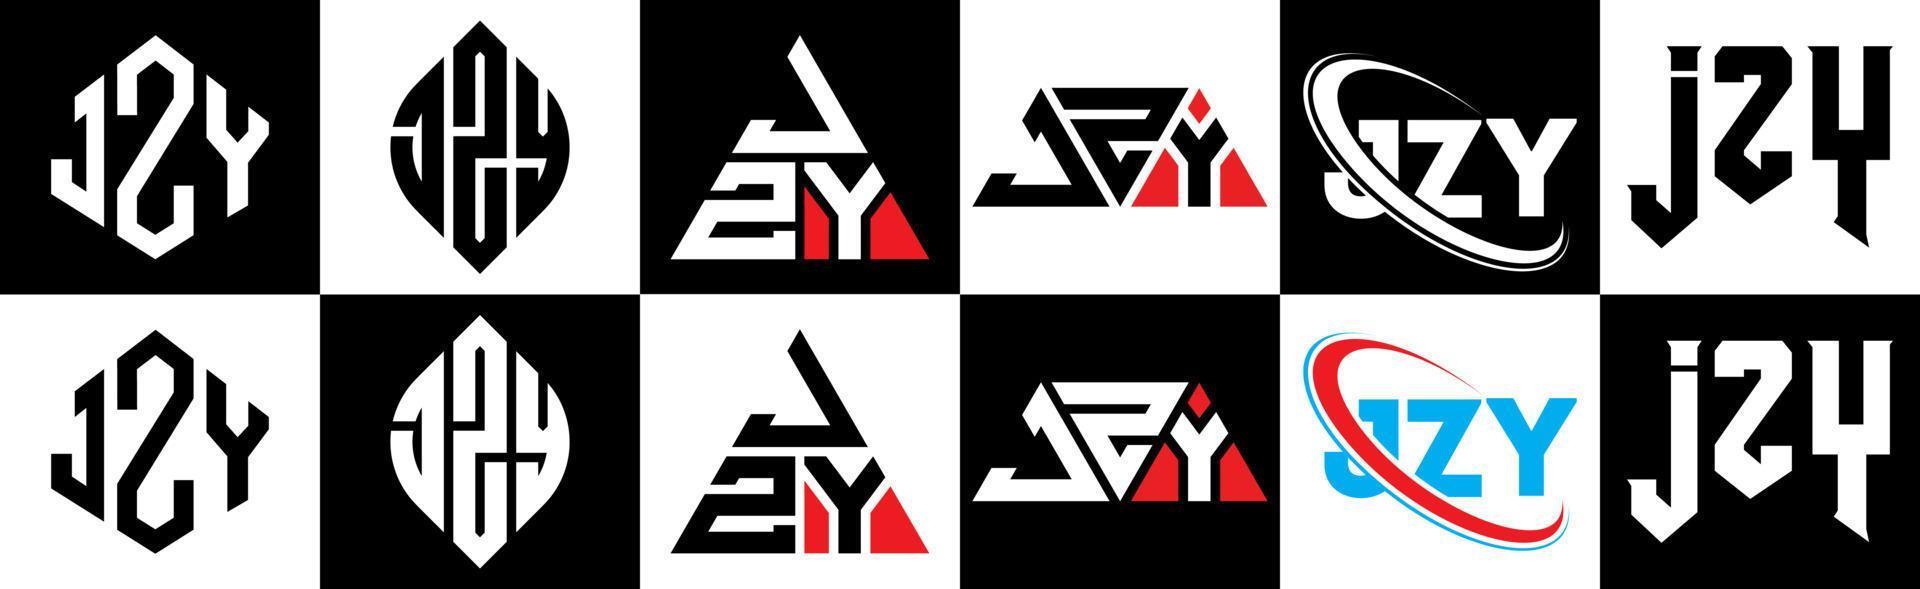 jzy-Buchstaben-Logo-Design in sechs Stilen. jzy polygon, kreis, dreieck, sechseck, flacher und einfacher stil mit schwarz-weißem buchstabenlogo in einer zeichenfläche. jzy minimalistisches und klassisches Logo vektor